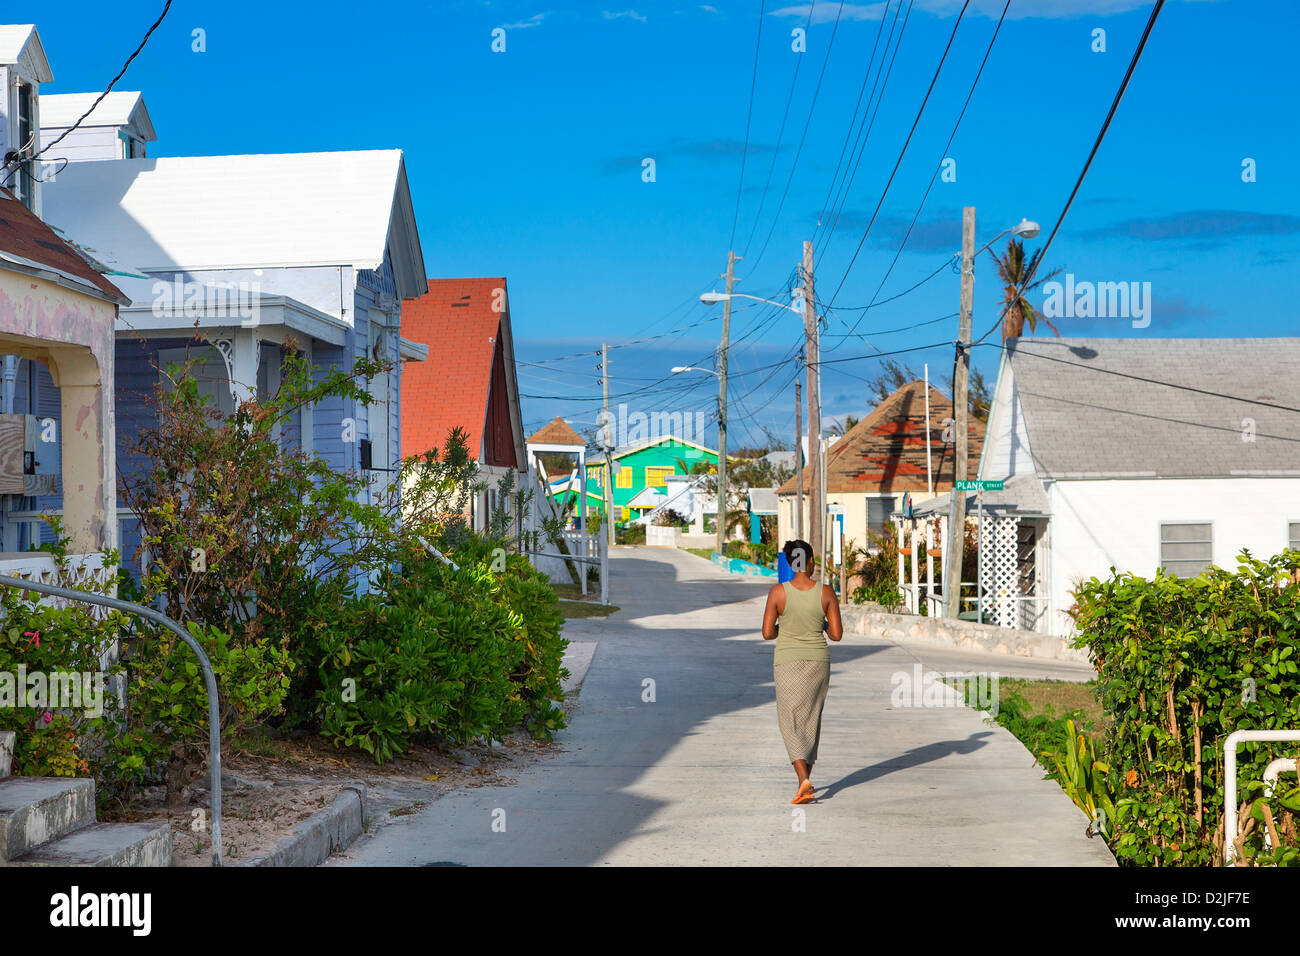 Bahamas, Eleuthera Island, villaggio di corrente Foto Stock